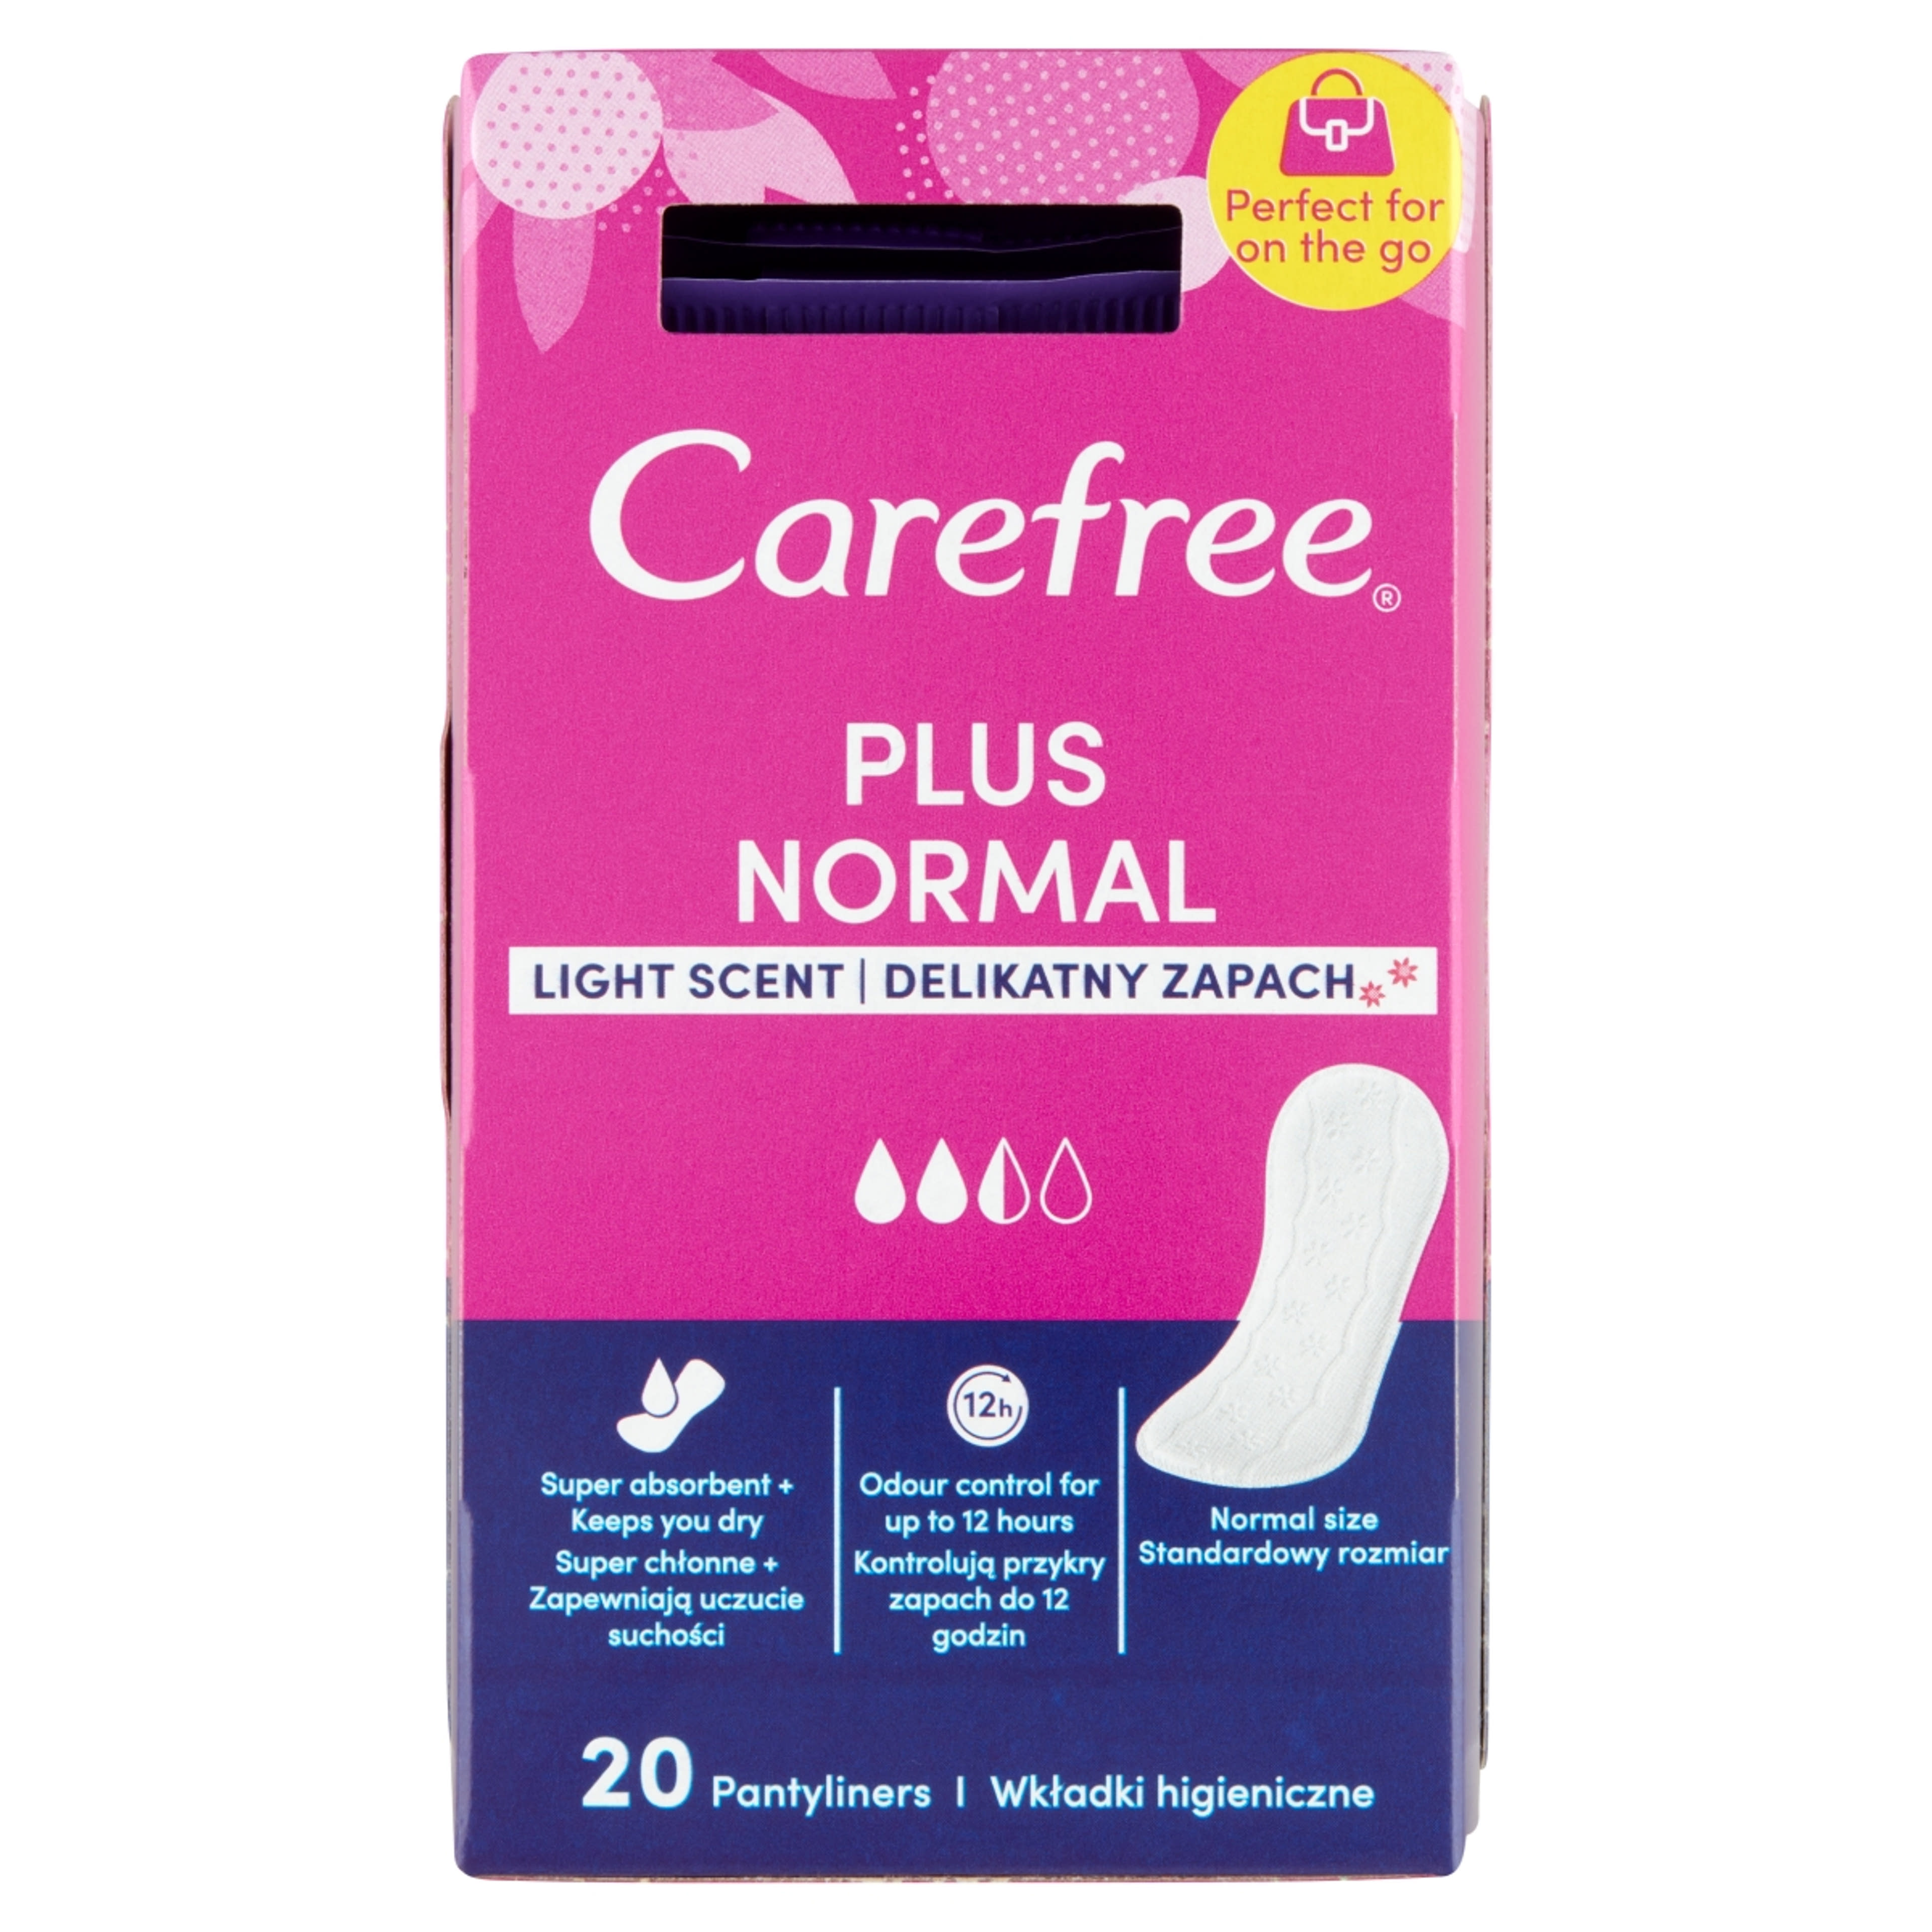 Carefree Plus Original tisztasági betét lágy illattal - 20 db